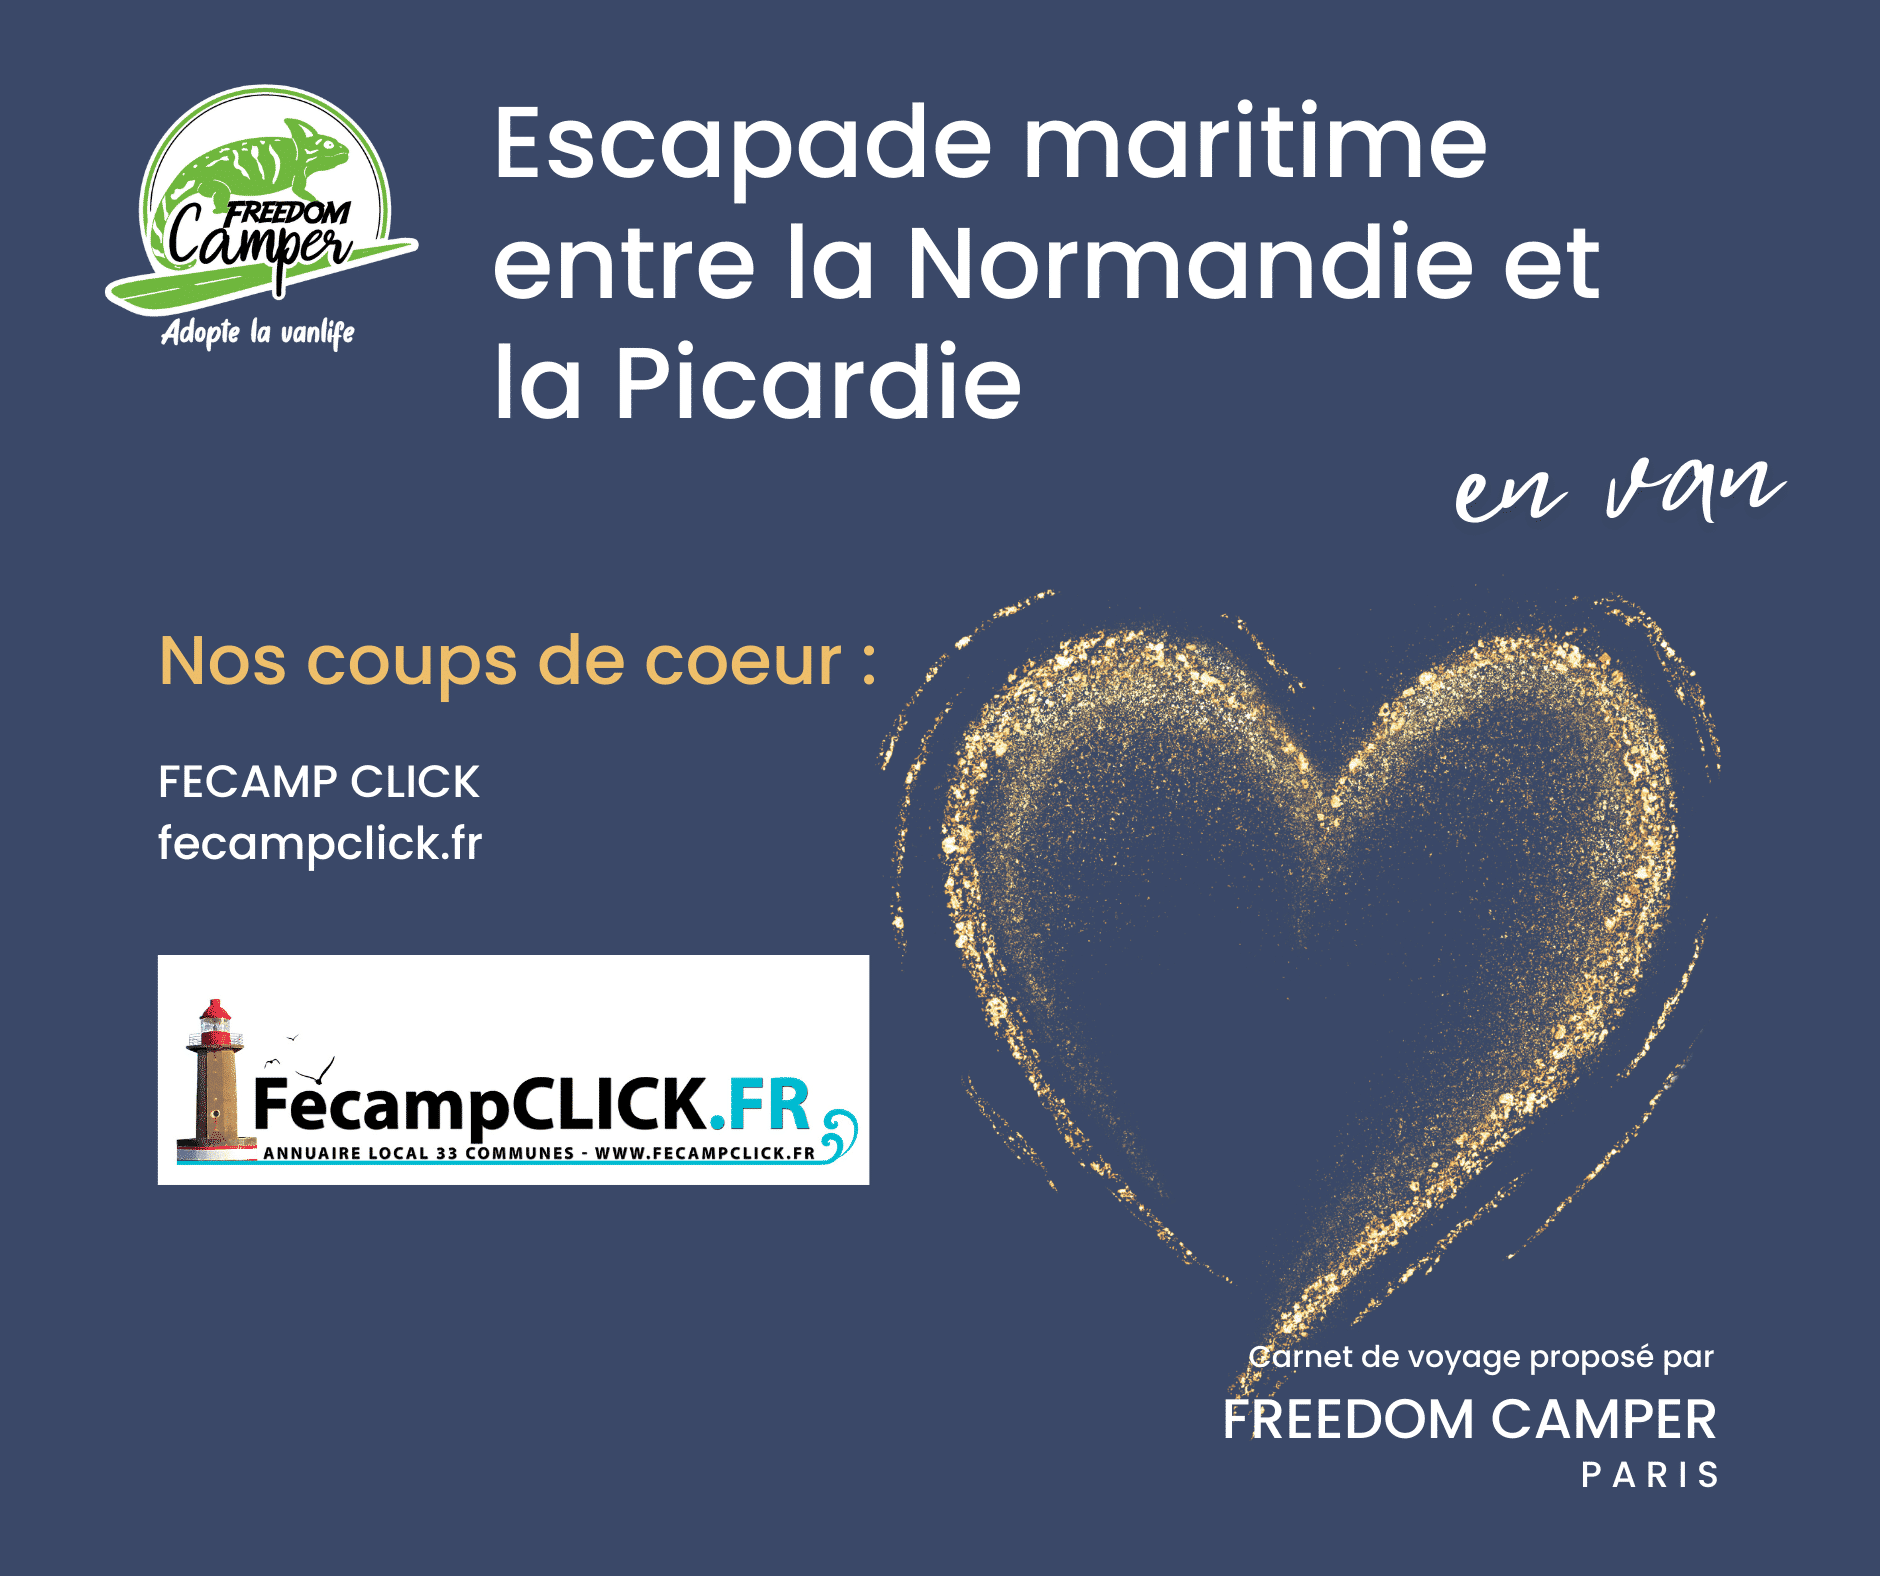 Fécamp Clic itinéraire Normandie et Picardie